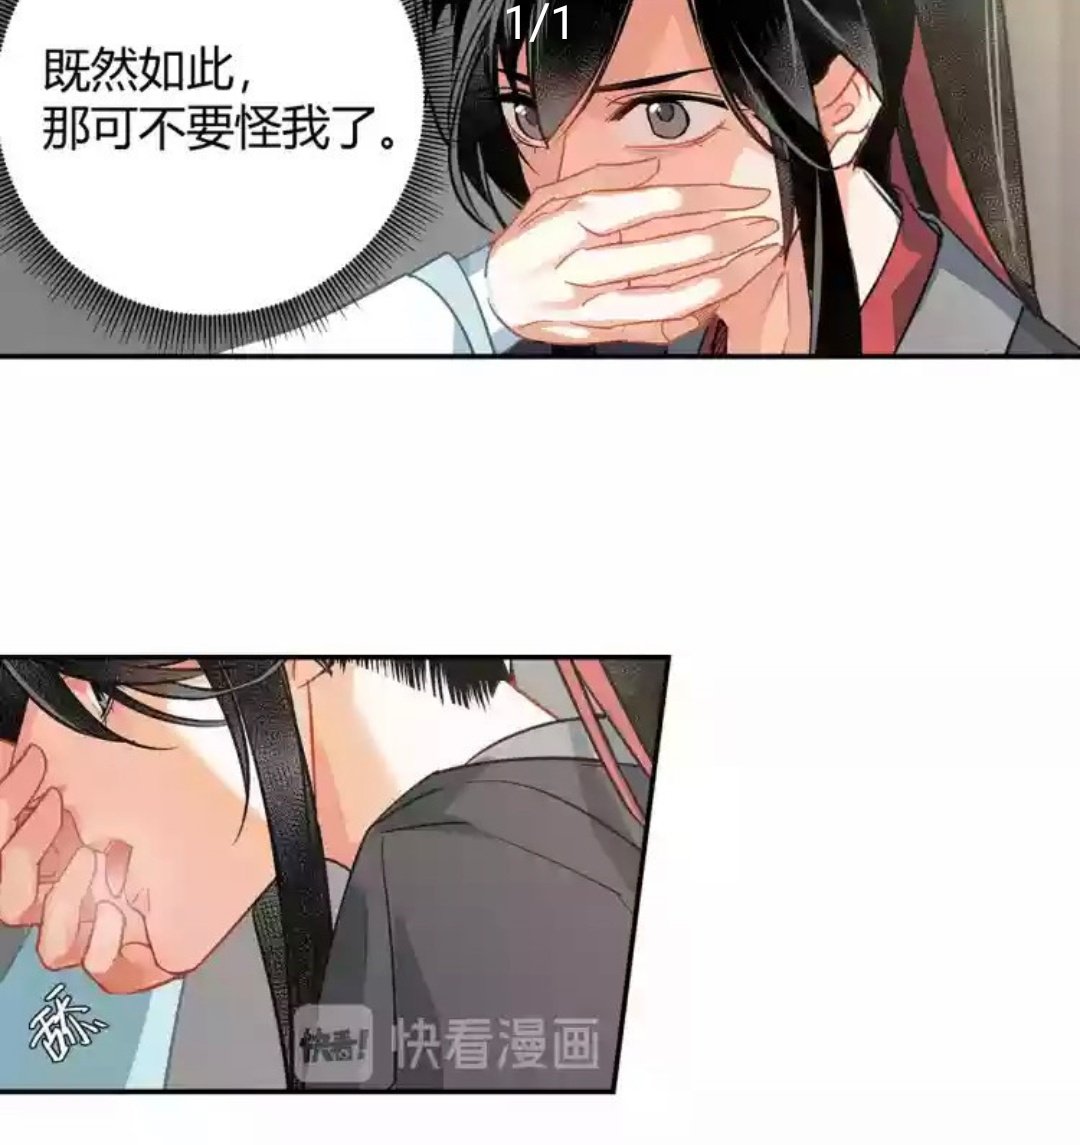 Horny Wei Ying licking Lan Zhan's hand ? 